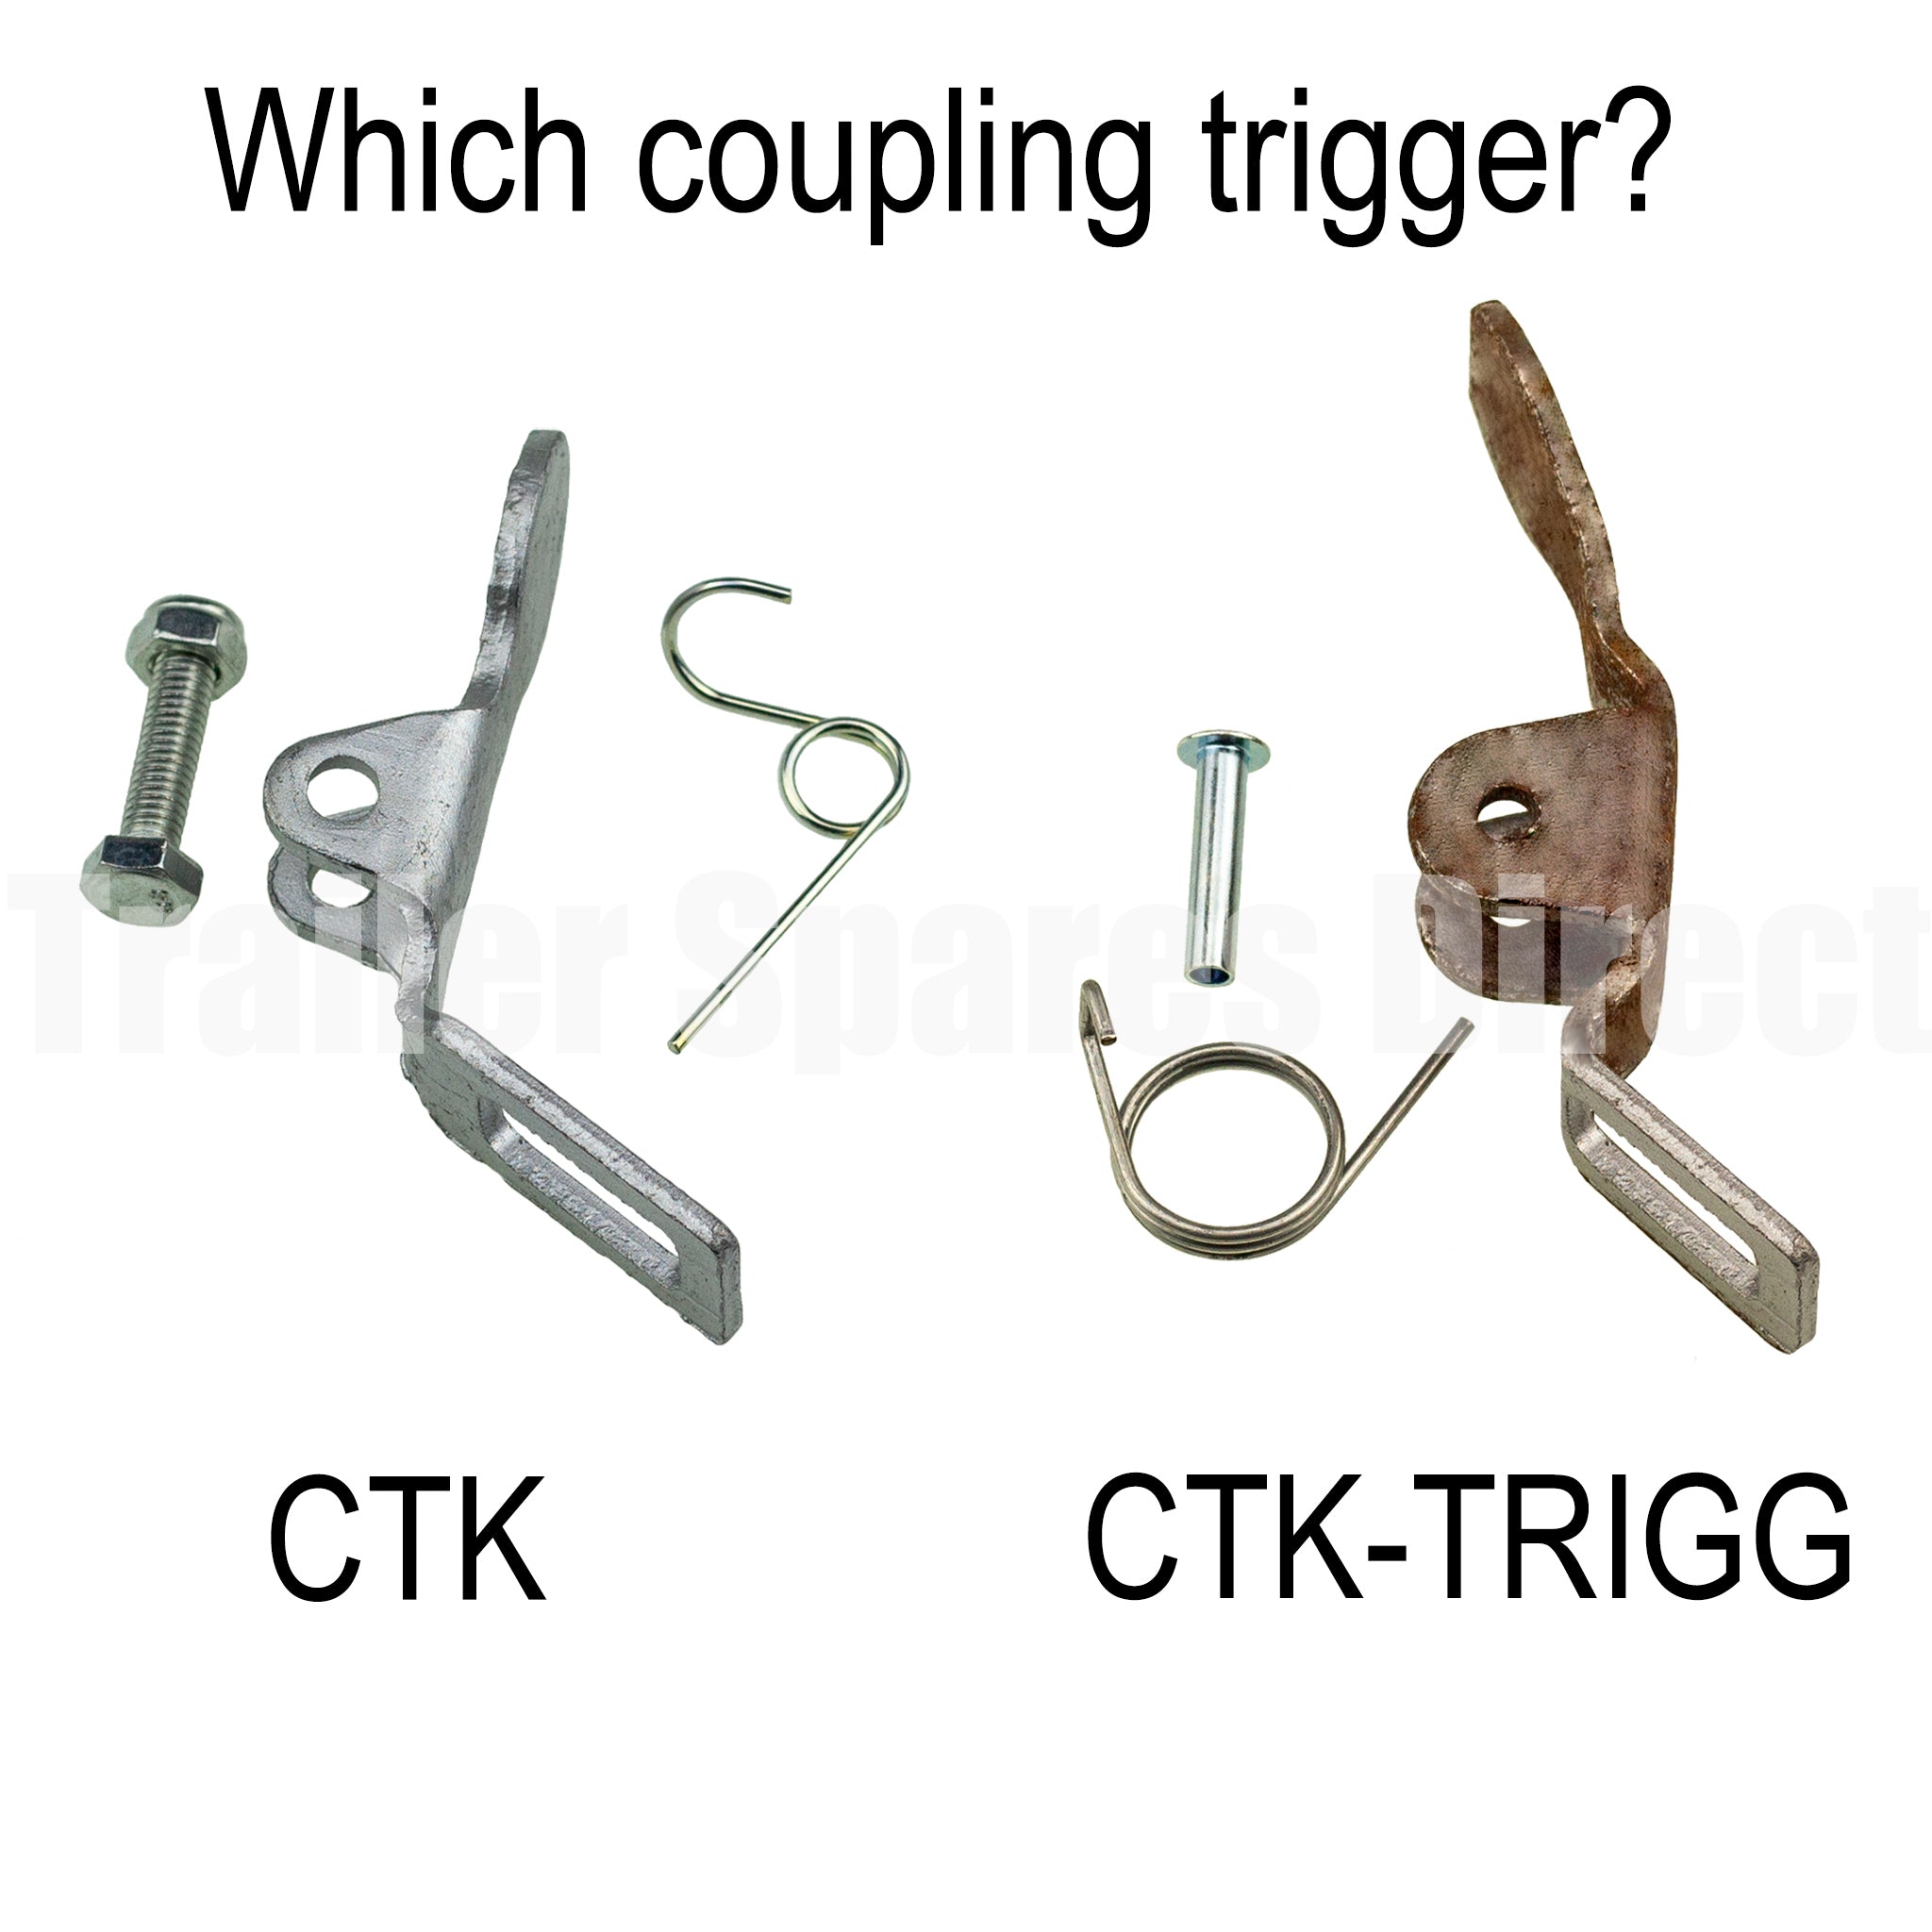 Coupling trigger kit